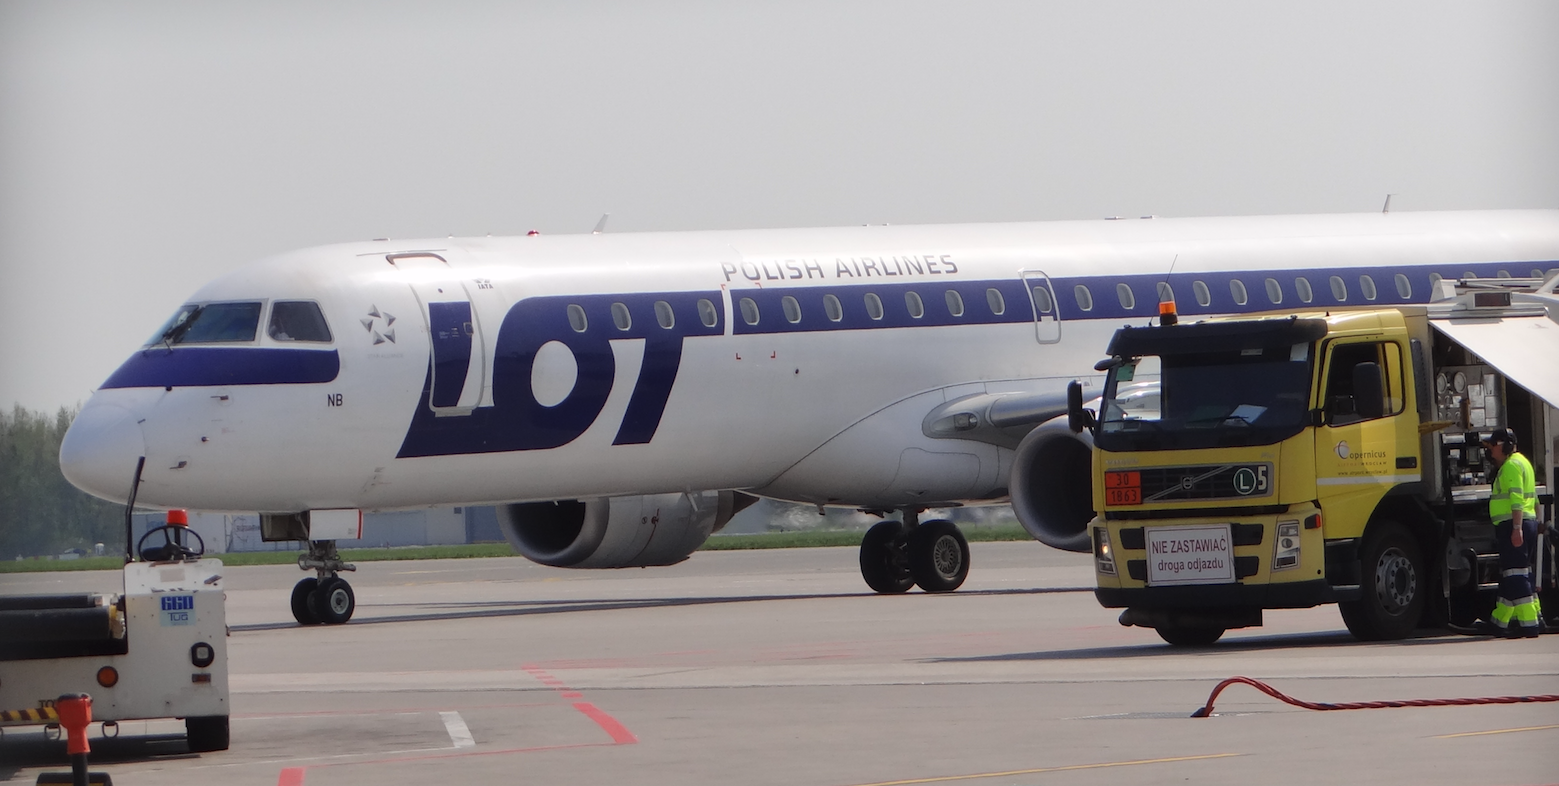 Lotnisko Strachowice. Embraer 190 rejestracja SP-LNB. 2018 rok. Zdjęcie Karol Placha Hetman